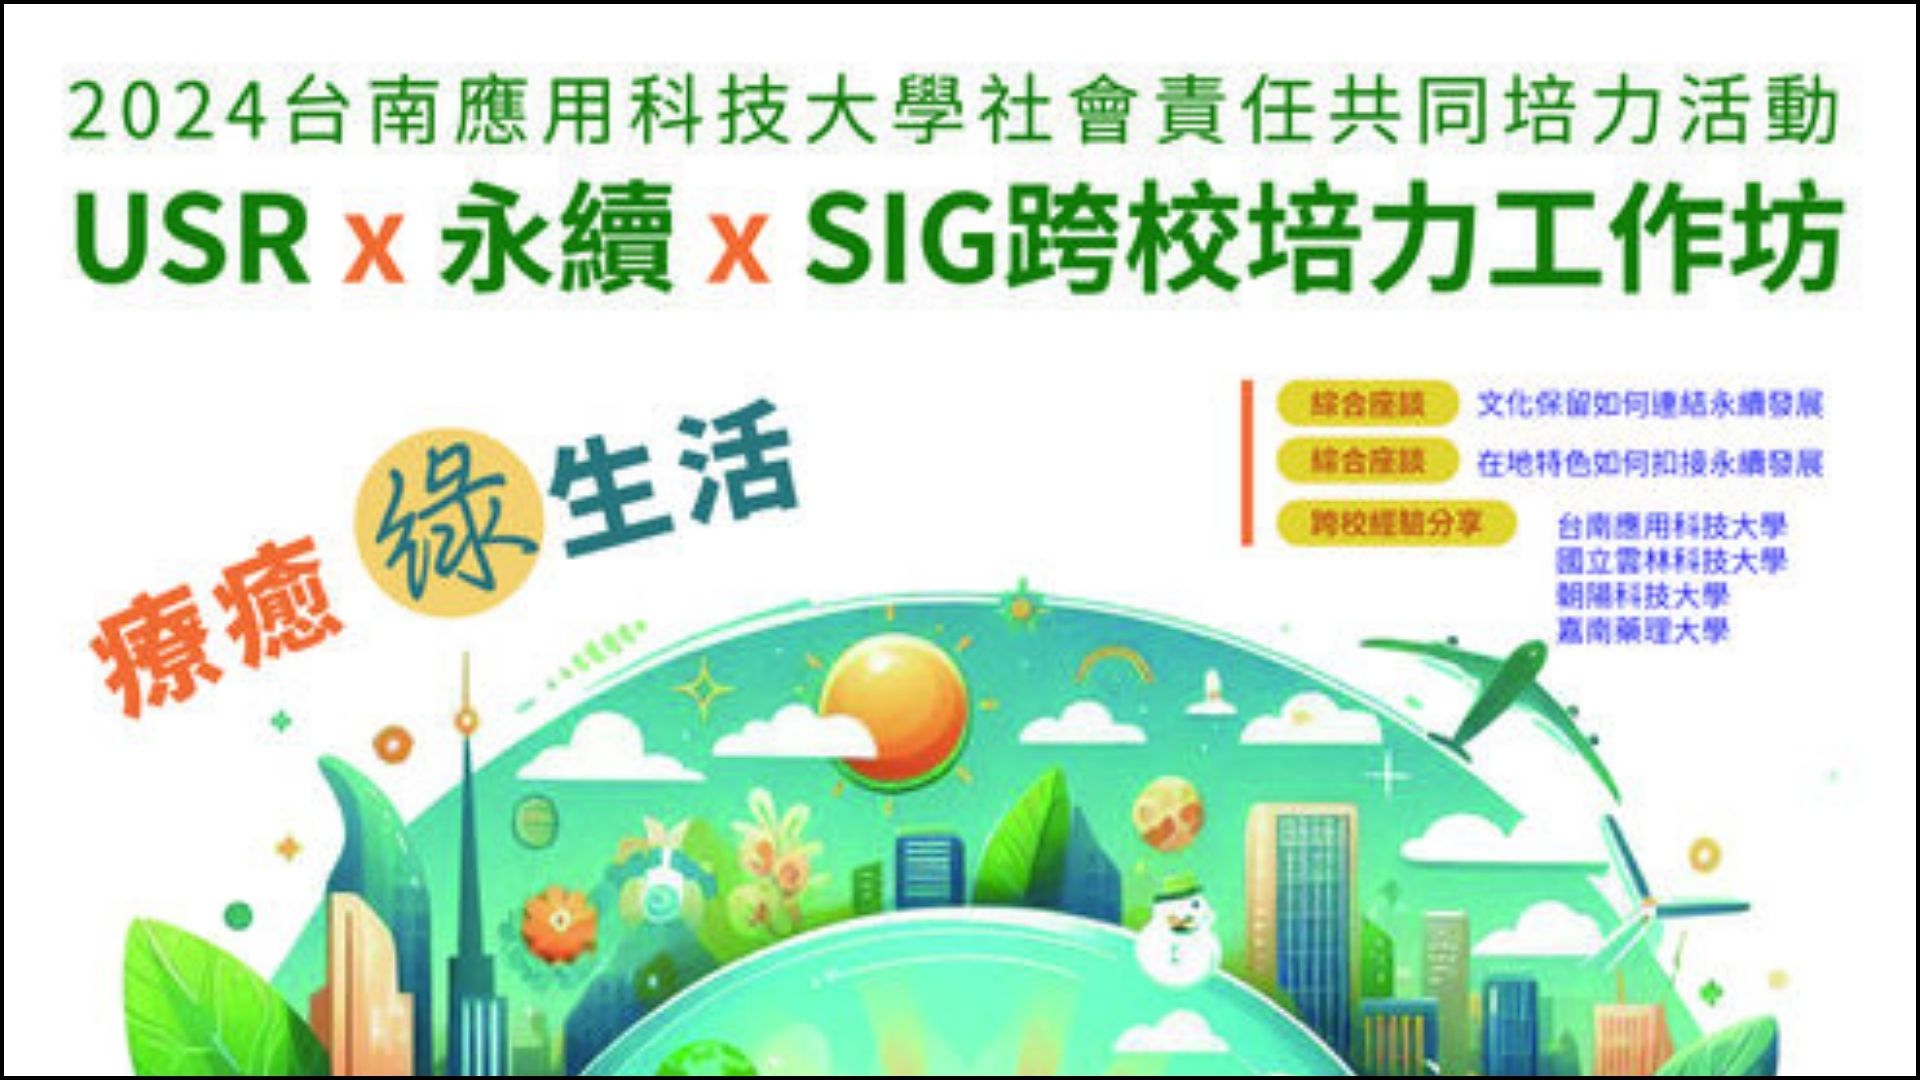 【研討會議】台南應用科技大學《USR x 永續 x SIG」跨校培力工作坊活動》